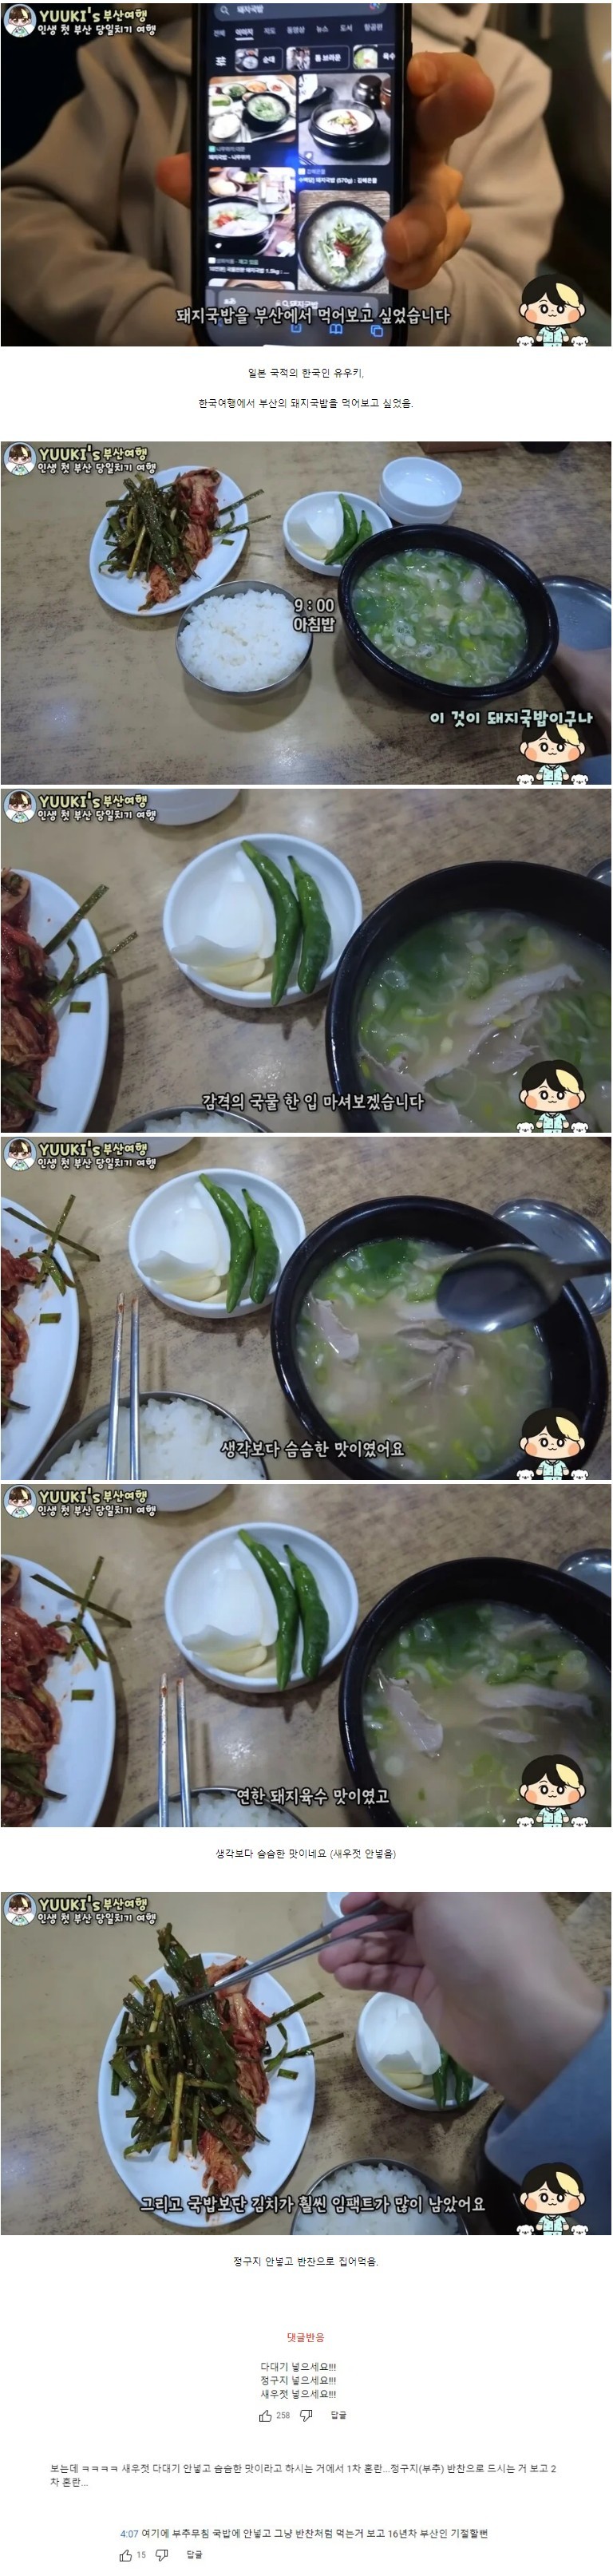 돼지국밥을 처음 먹는 유튜버를 본 부산인들 반응